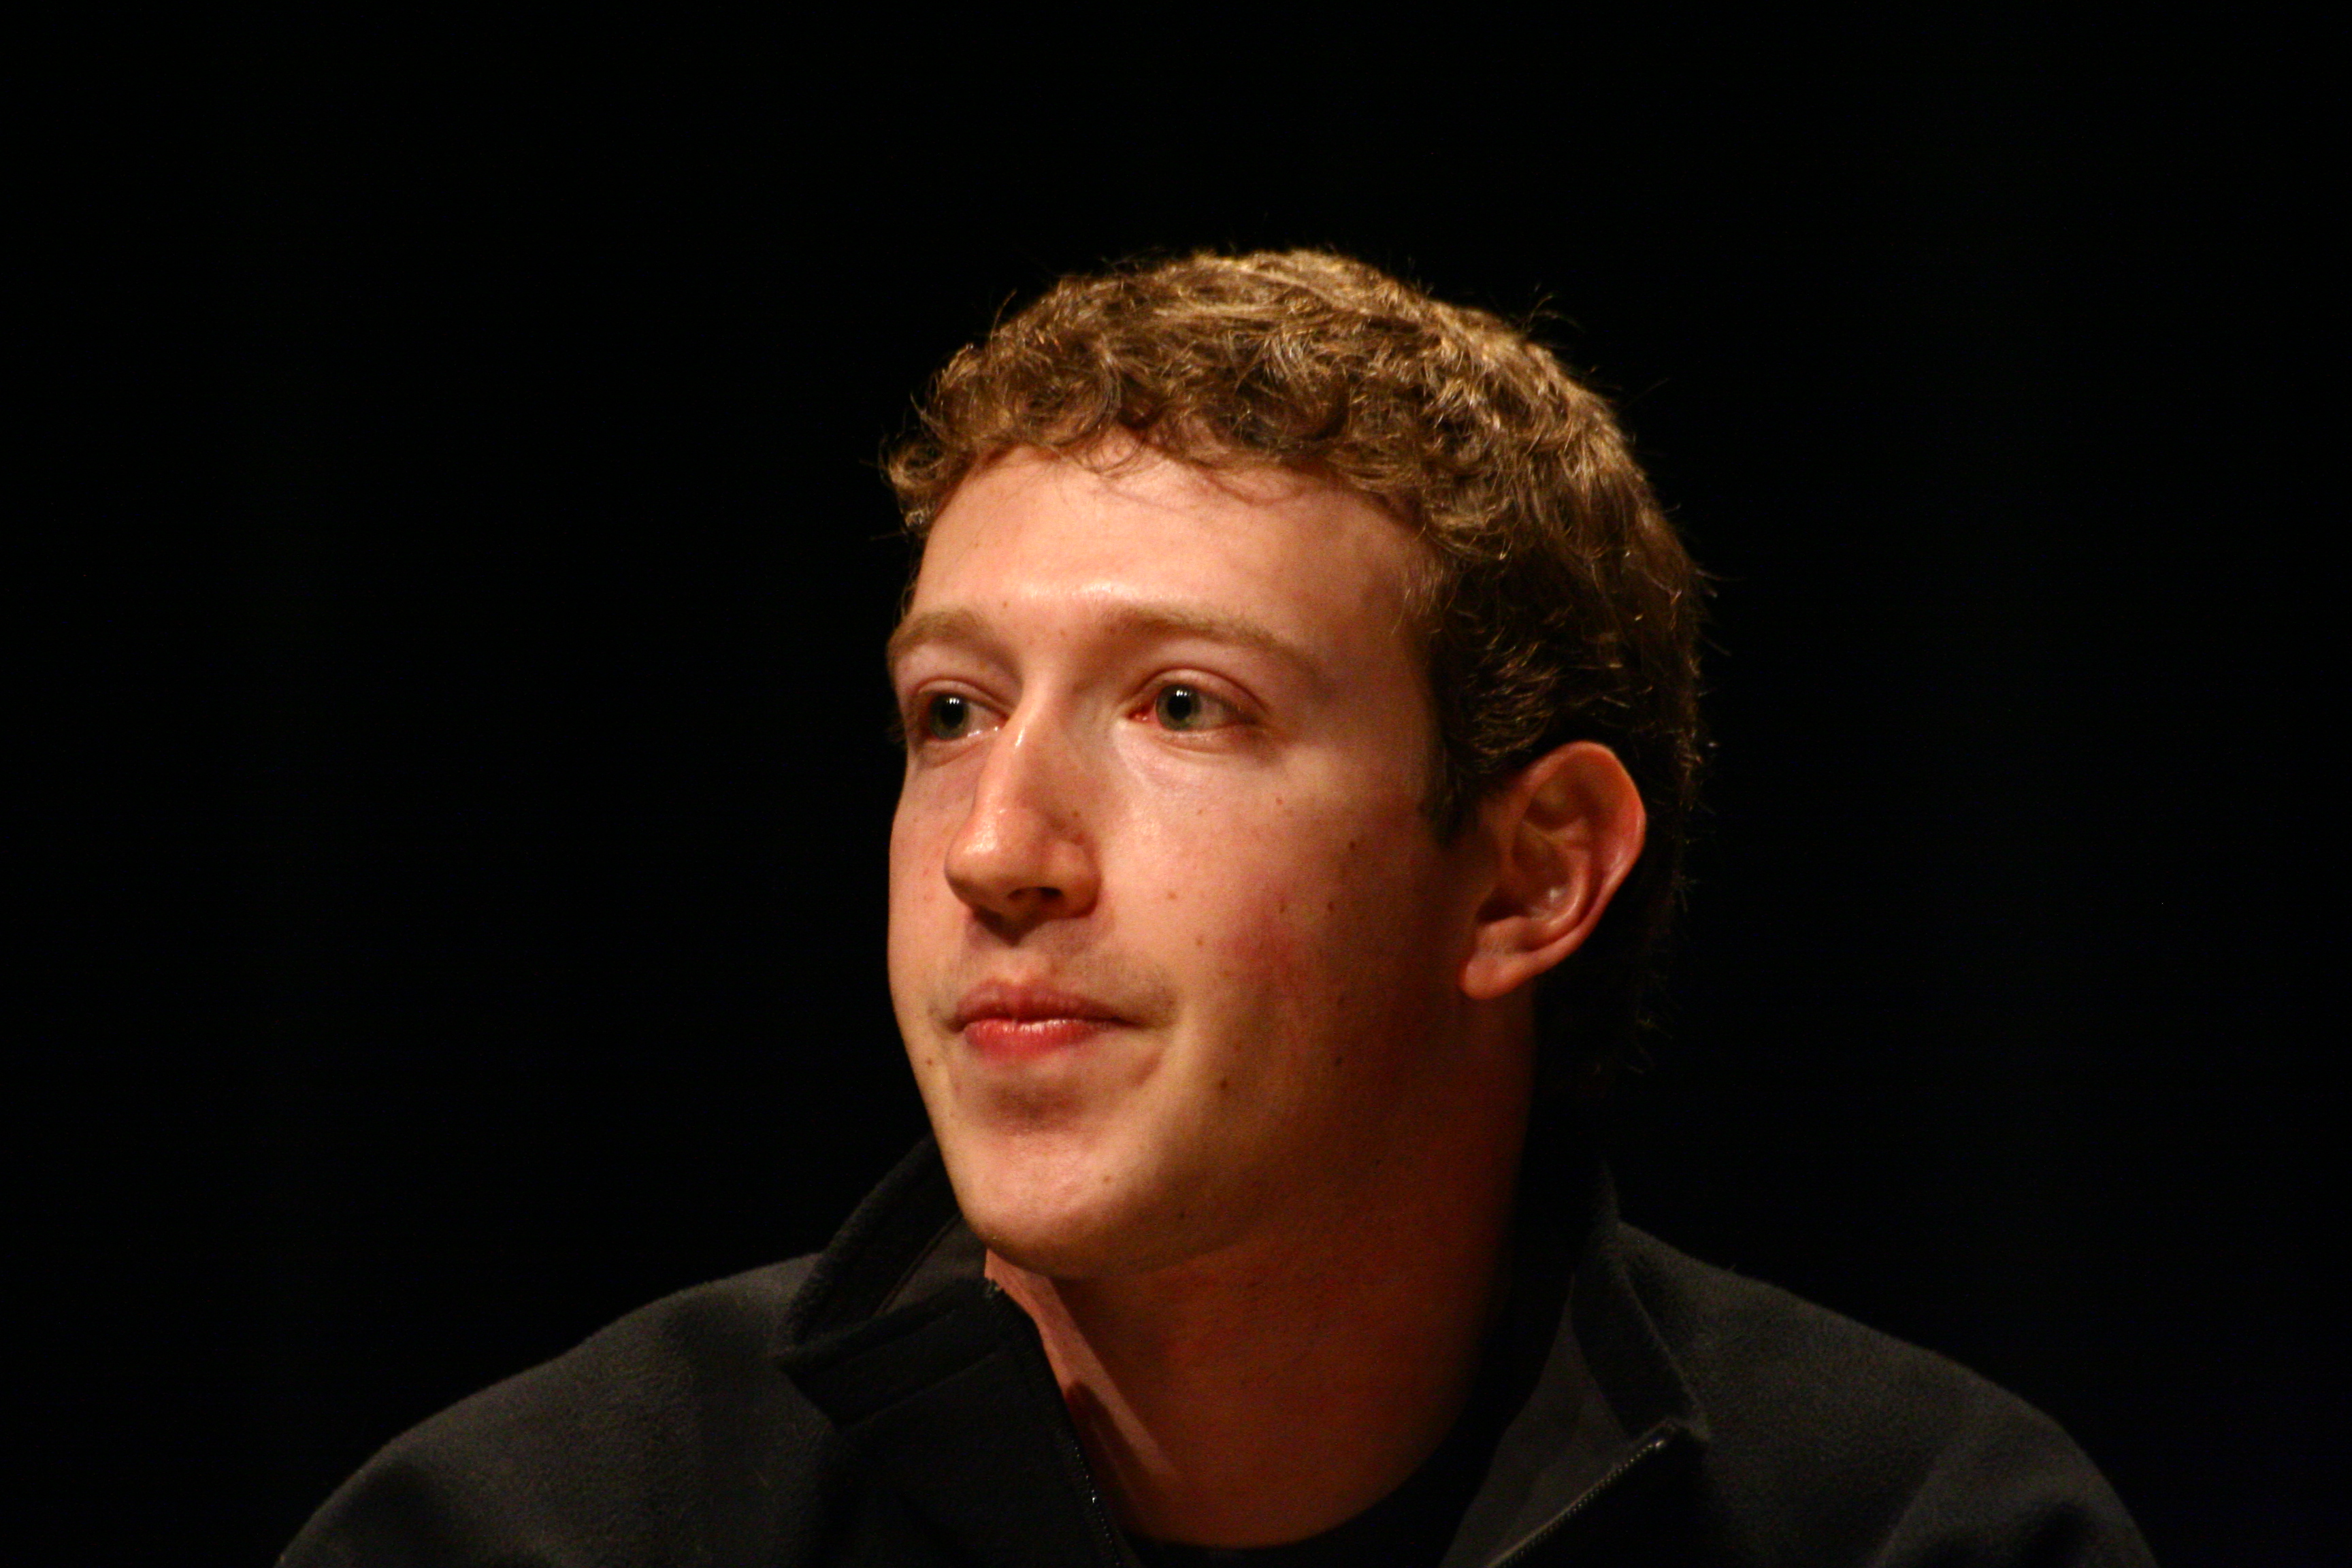 A Facebook felhagy a hírfolyamos kísérletezéssel